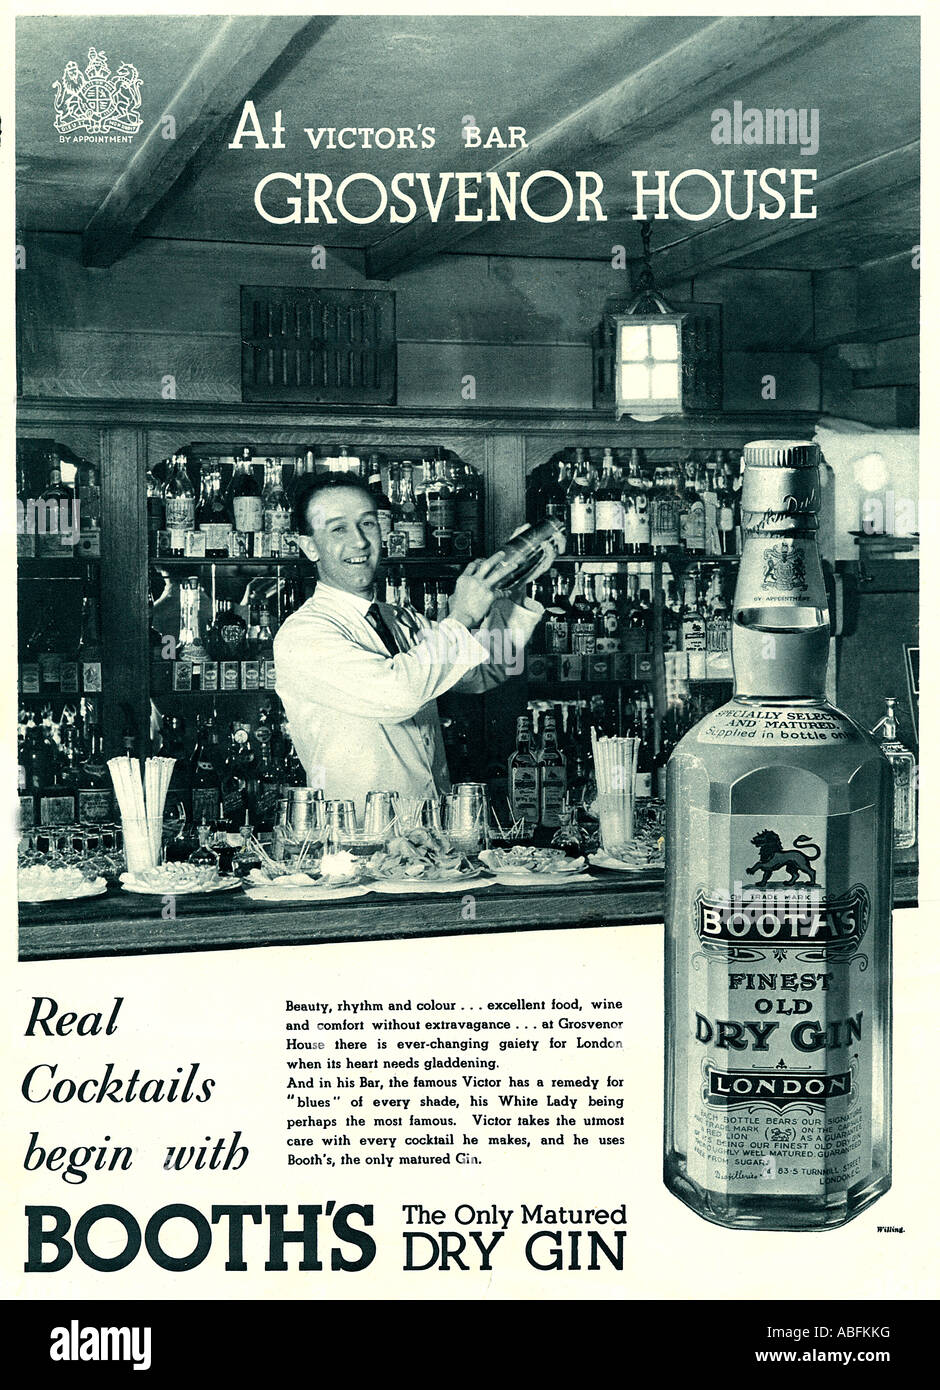 Grosvenor House Hotel stands Gin 1934 publicité pour le London Dry Gin situé dans la région de quartier Mayfair bar Victors Banque D'Images